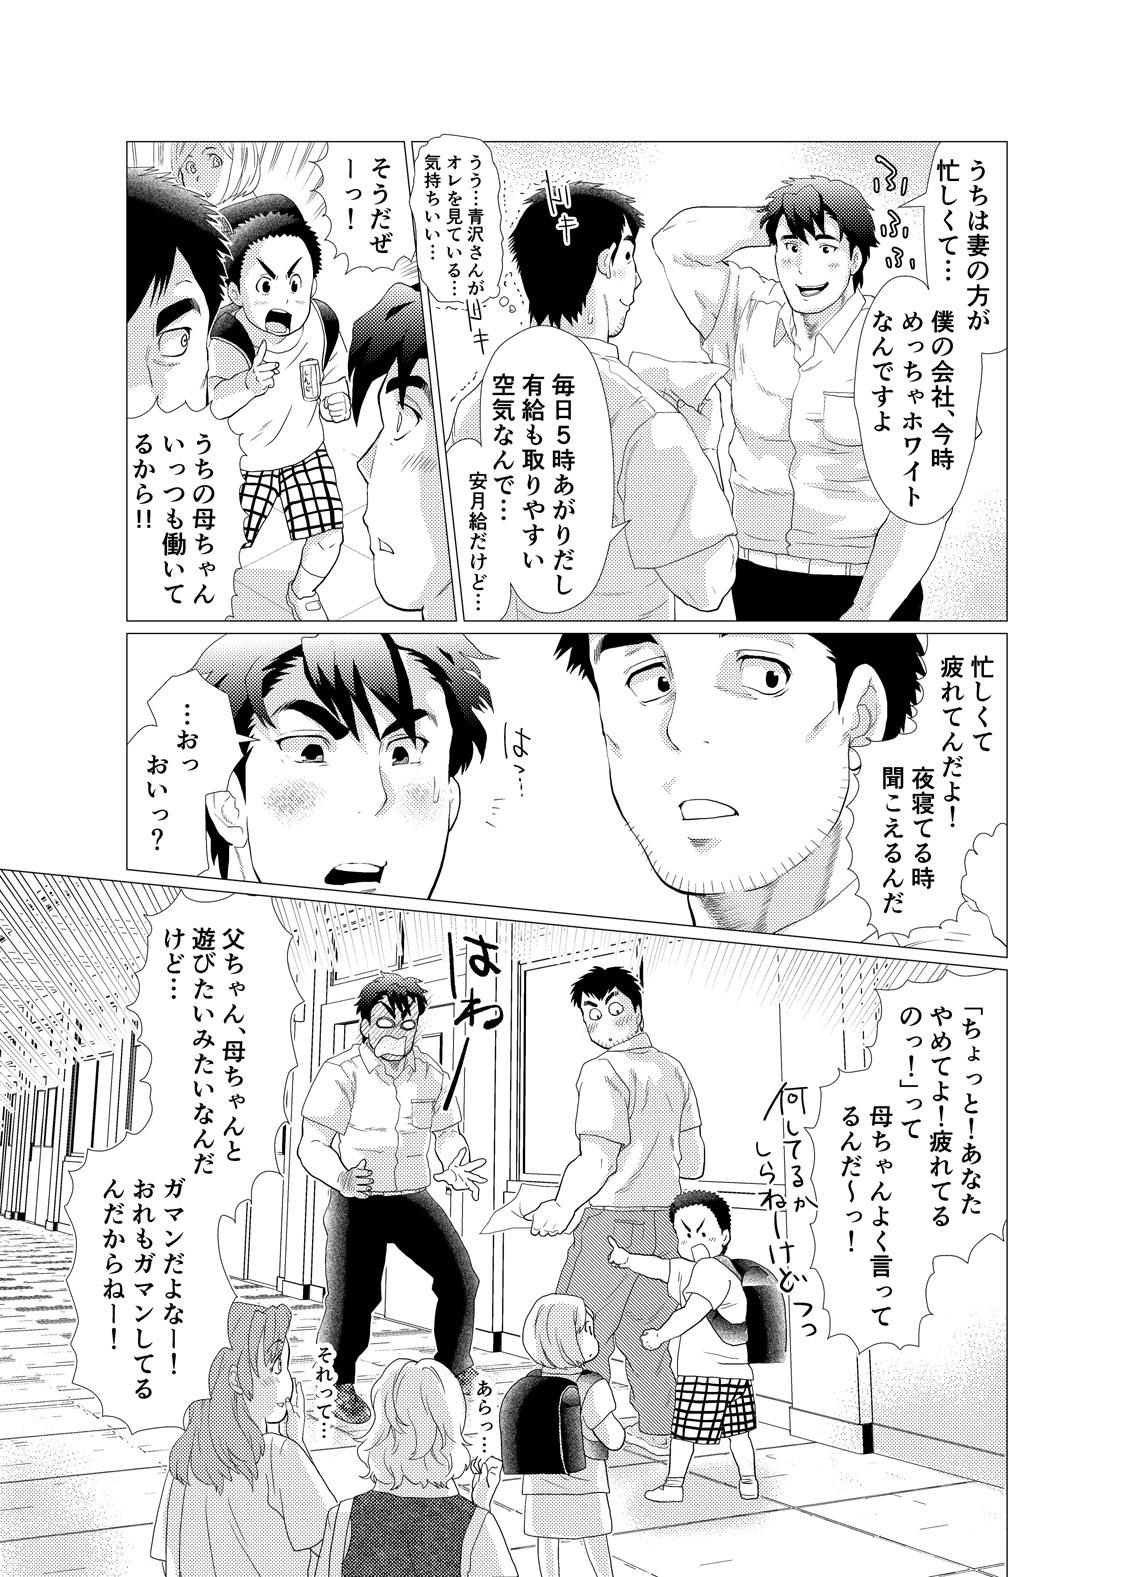 Deflowered Ikenai desu! Nonaka-sensei - Original Solo Female - Page 13